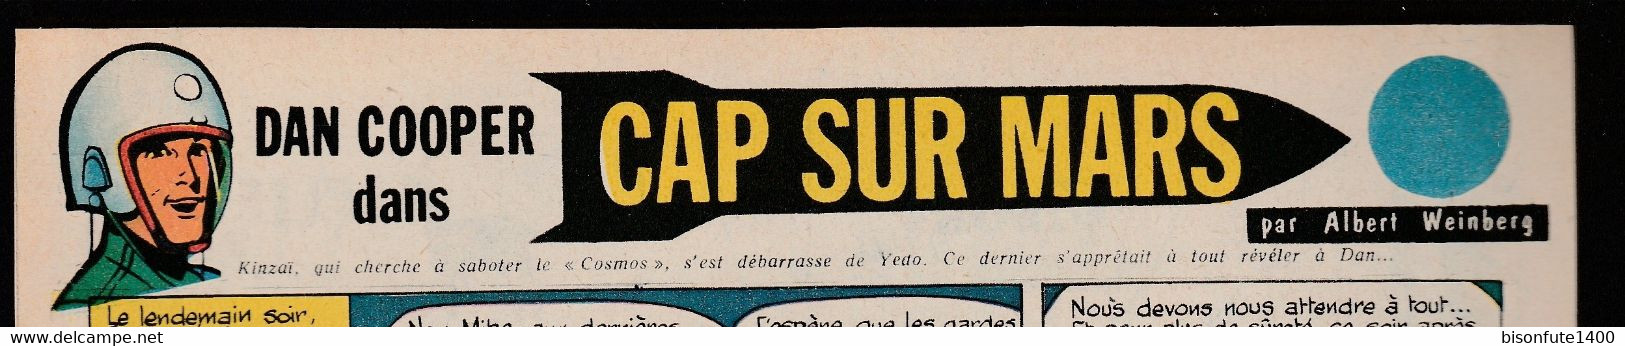 Bandeau Titre De Dan Cooper "Cap Sur Mars" Datant De 1958 Et Inédit Dans Les Bandes Dessinées En Albums. - Dan Cooper